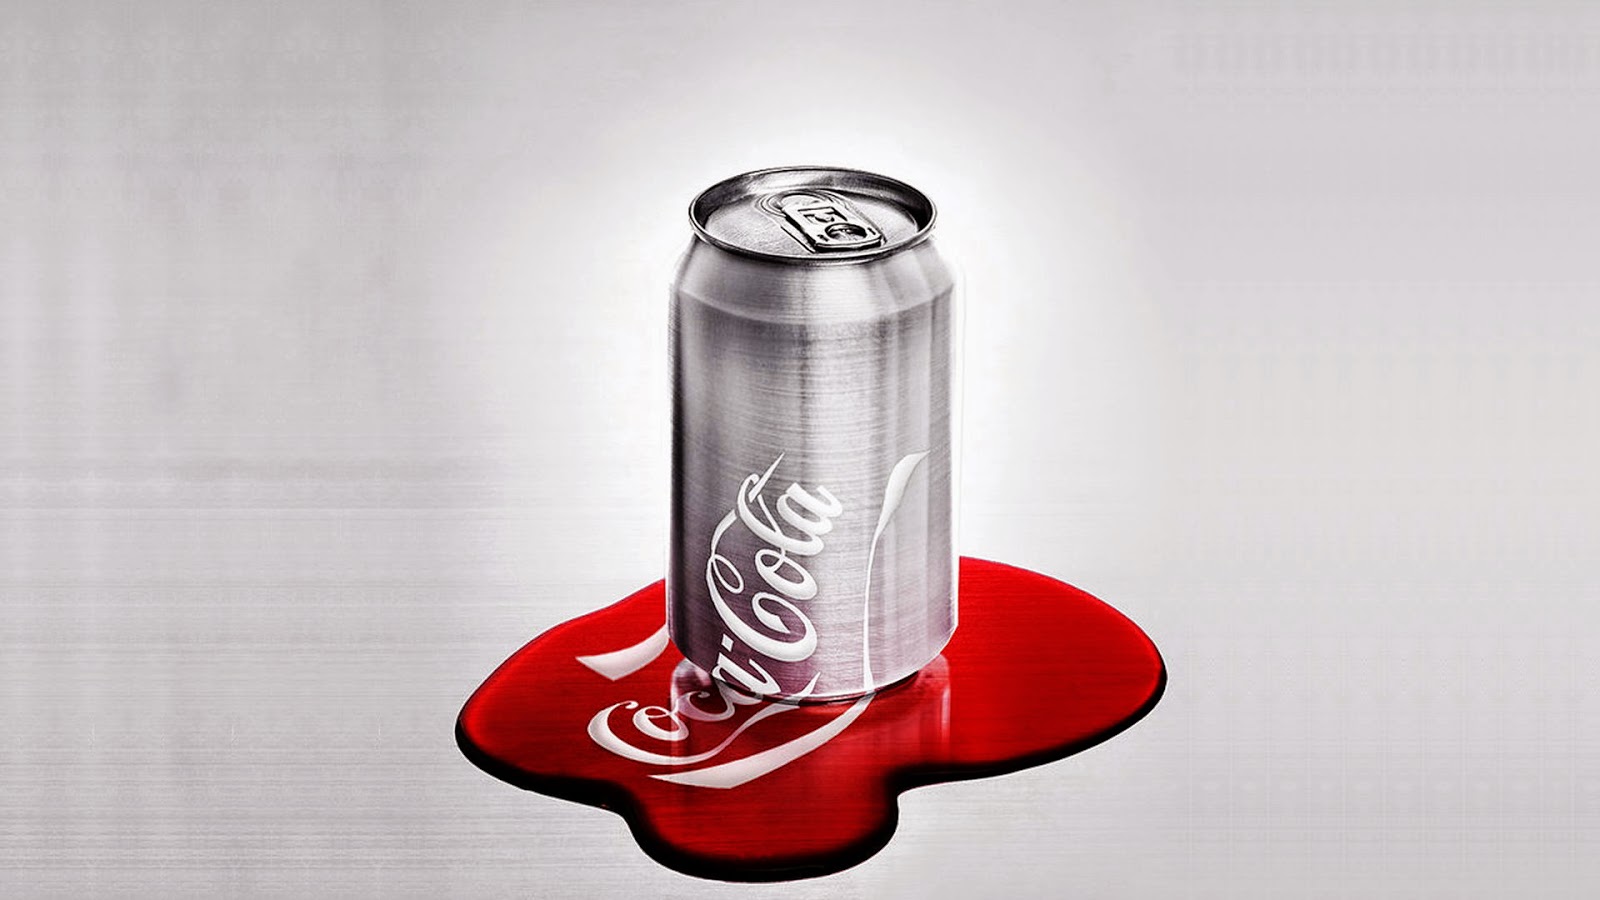 cola tapete,getränkedose,alu dose,coca cola,cola,softdrinks mit kohlensäure